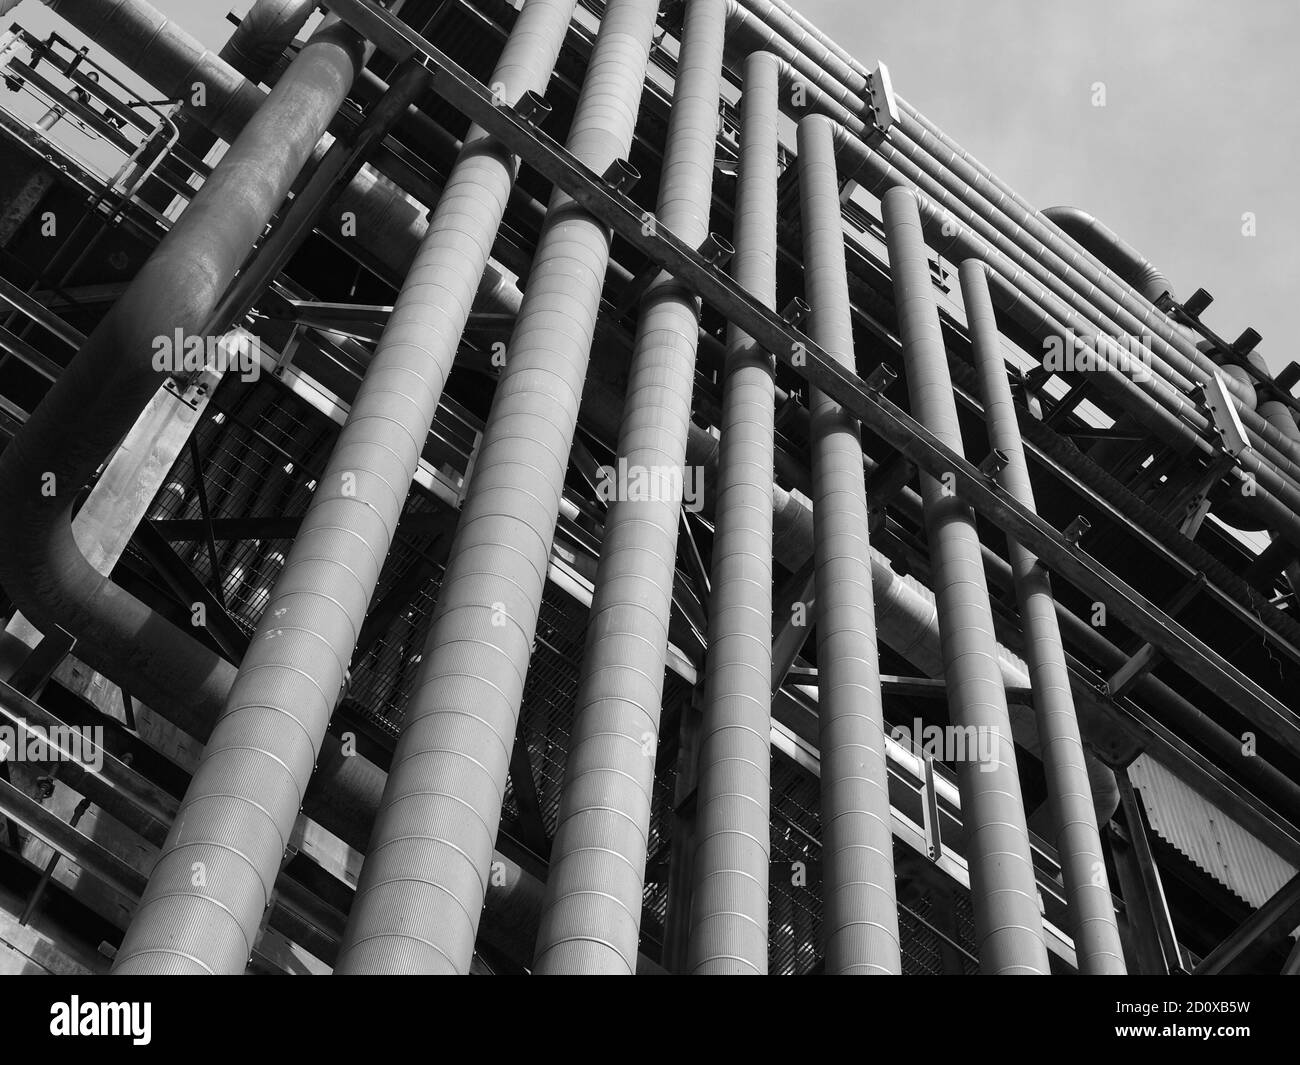 Vue en noir et blanc de l'ancienne tour de raffinerie de pétrole et de pétrochimie recouverte de tuyaux industriels rouillés. Banque D'Images